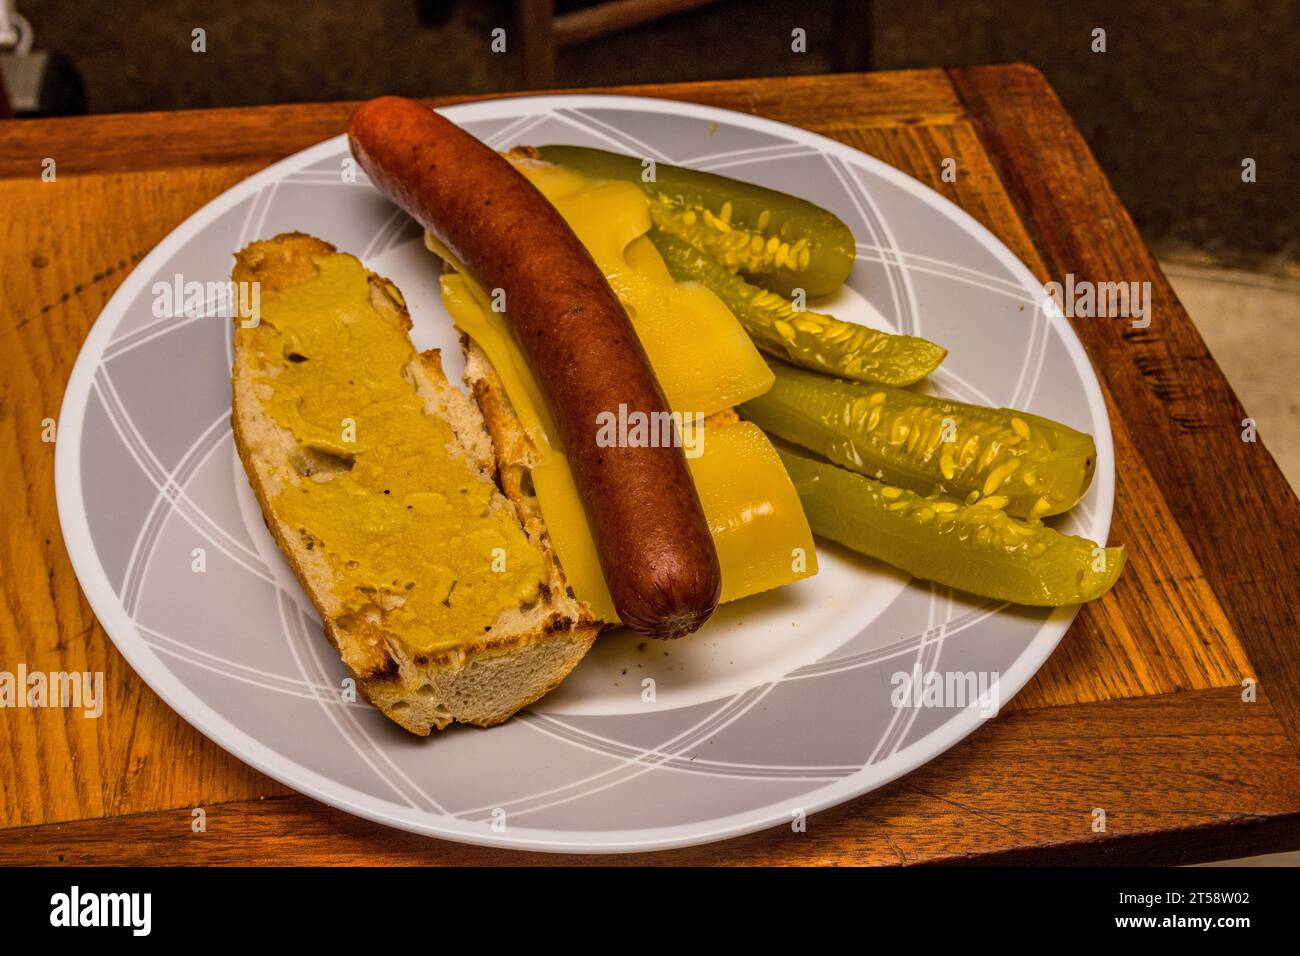 Ein Sandwich mit französischem Baguette und dijon-Senf, norwegischem Jarlsberg-Käse, polnischem Hotdog und amerikanischer Dill-Gurke auf der Seite. Stockfoto